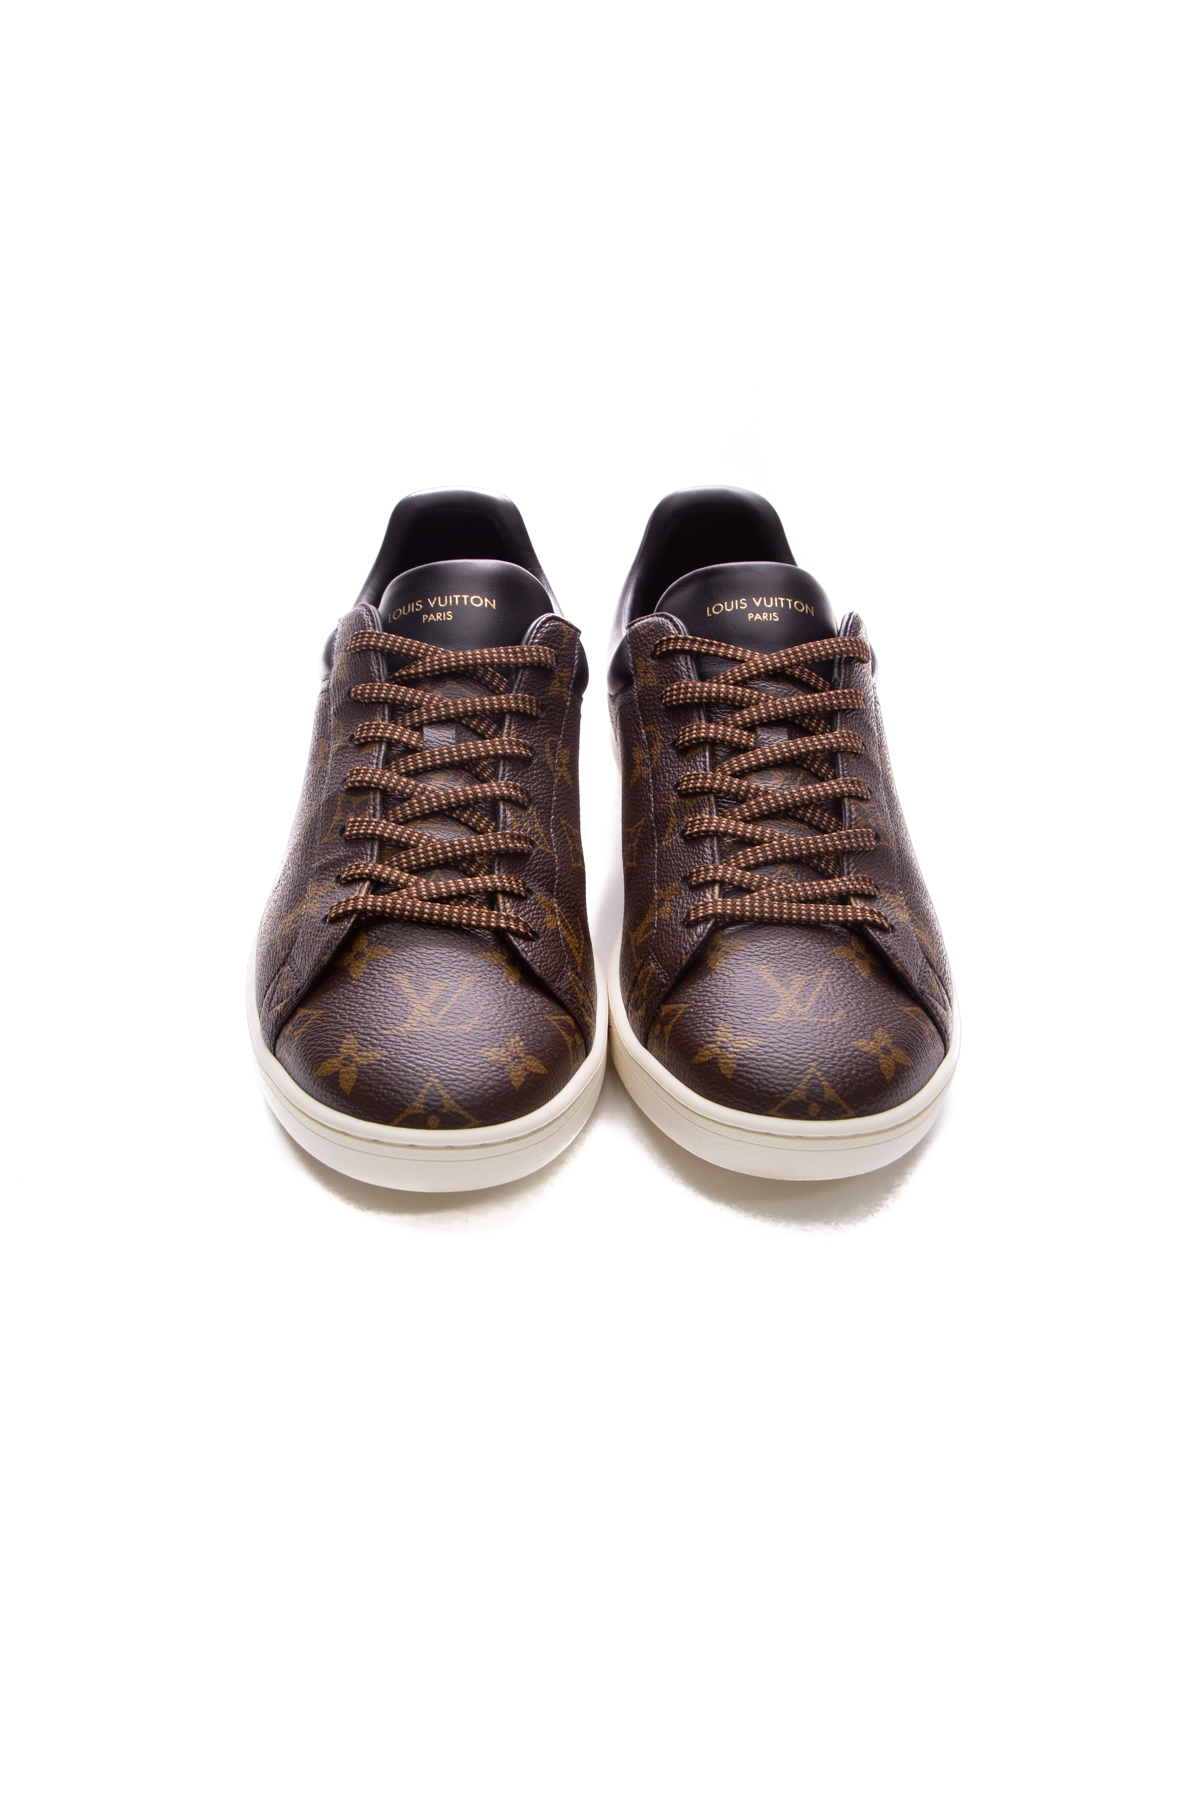 Louis Vuitton Men's Front Row Sneakers - US Size 10.5